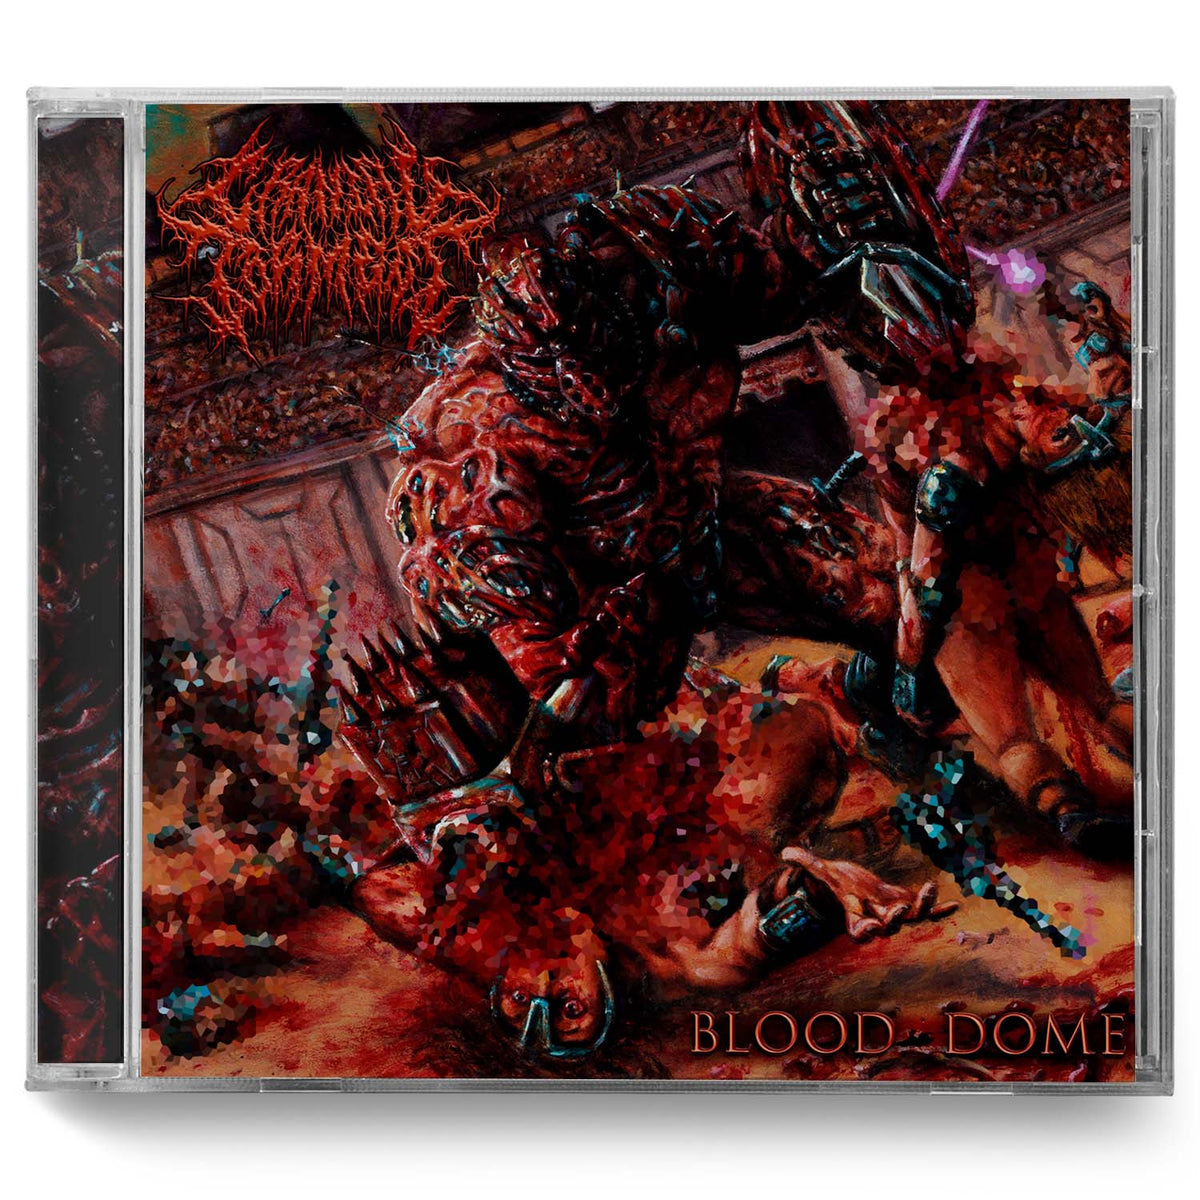 Cranial Torment "Blood Dome" CD - Miasma Records